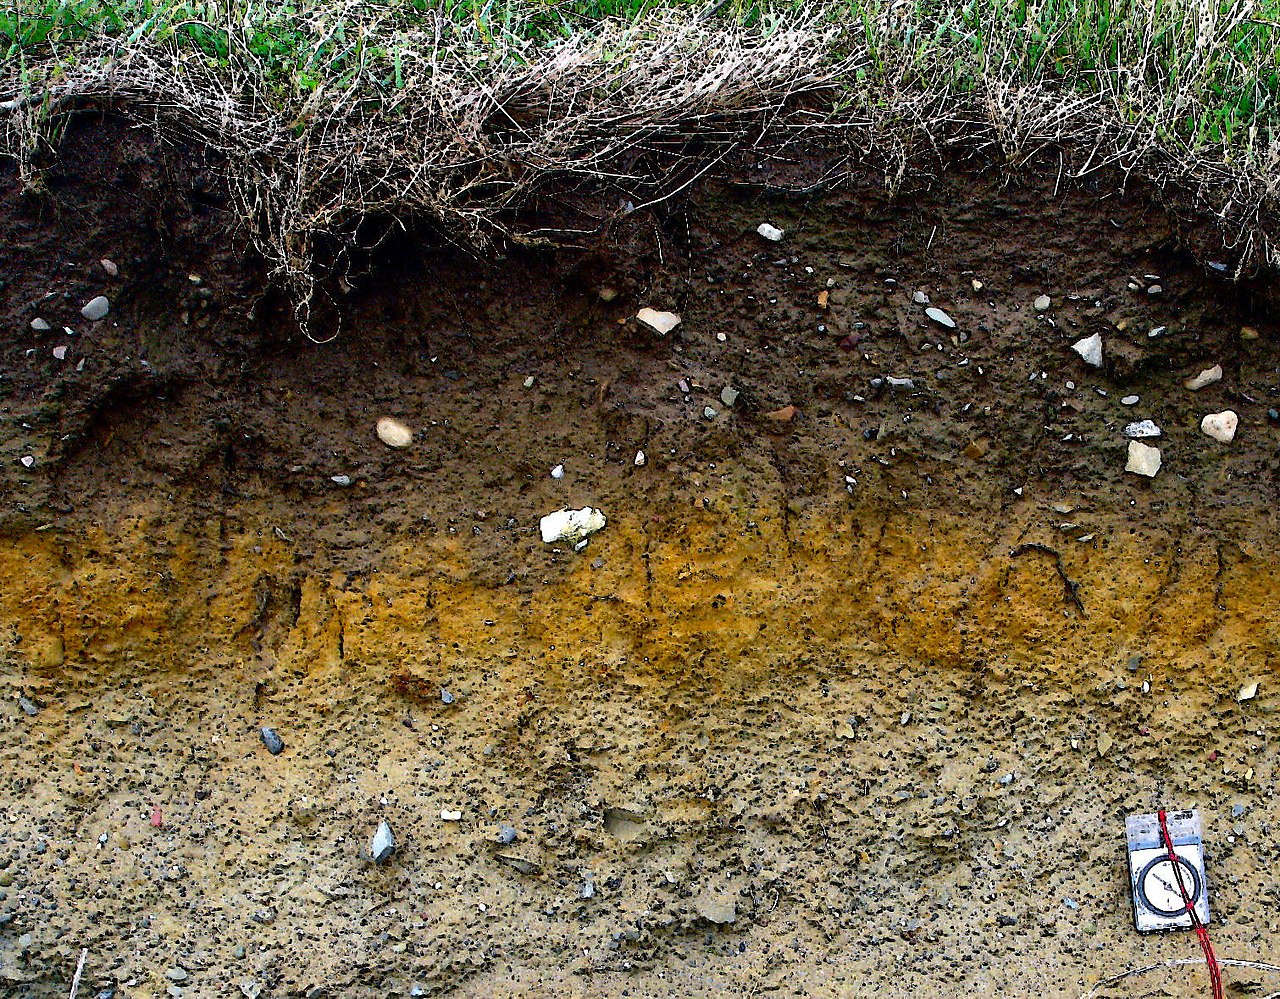 يسمى خليط المواد العضوية الميتة المتحللة التي تستخدم في تسميد التربة